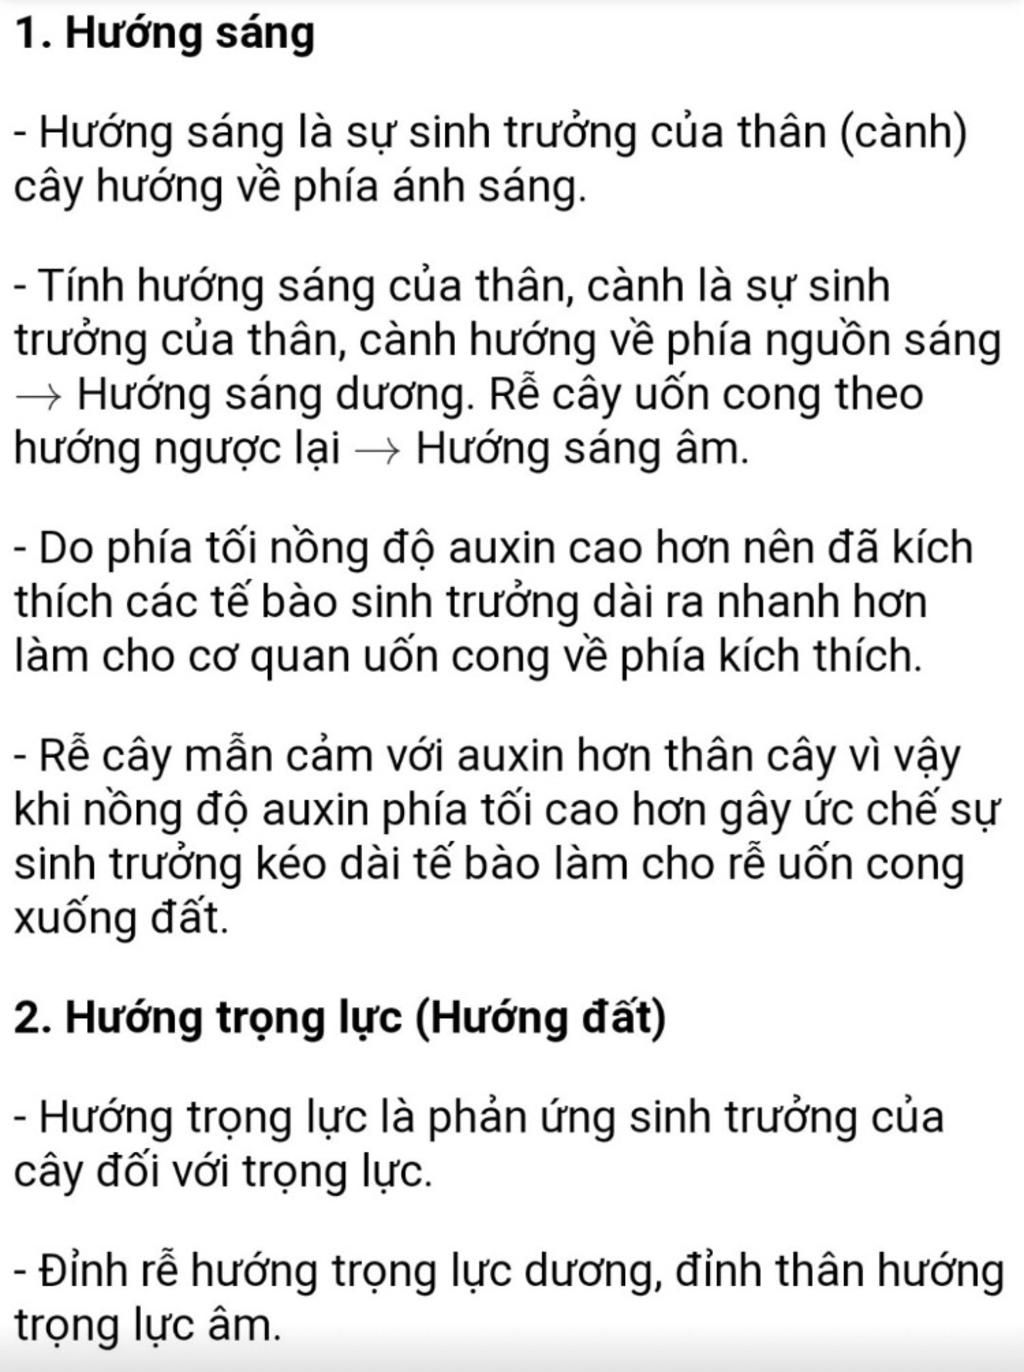 liet-ke-cac-kieu-huong-dong-phan-chia-theo-loai-tac-nhan-kich-thich-o-moi-kieu-huong-dong-lay-1